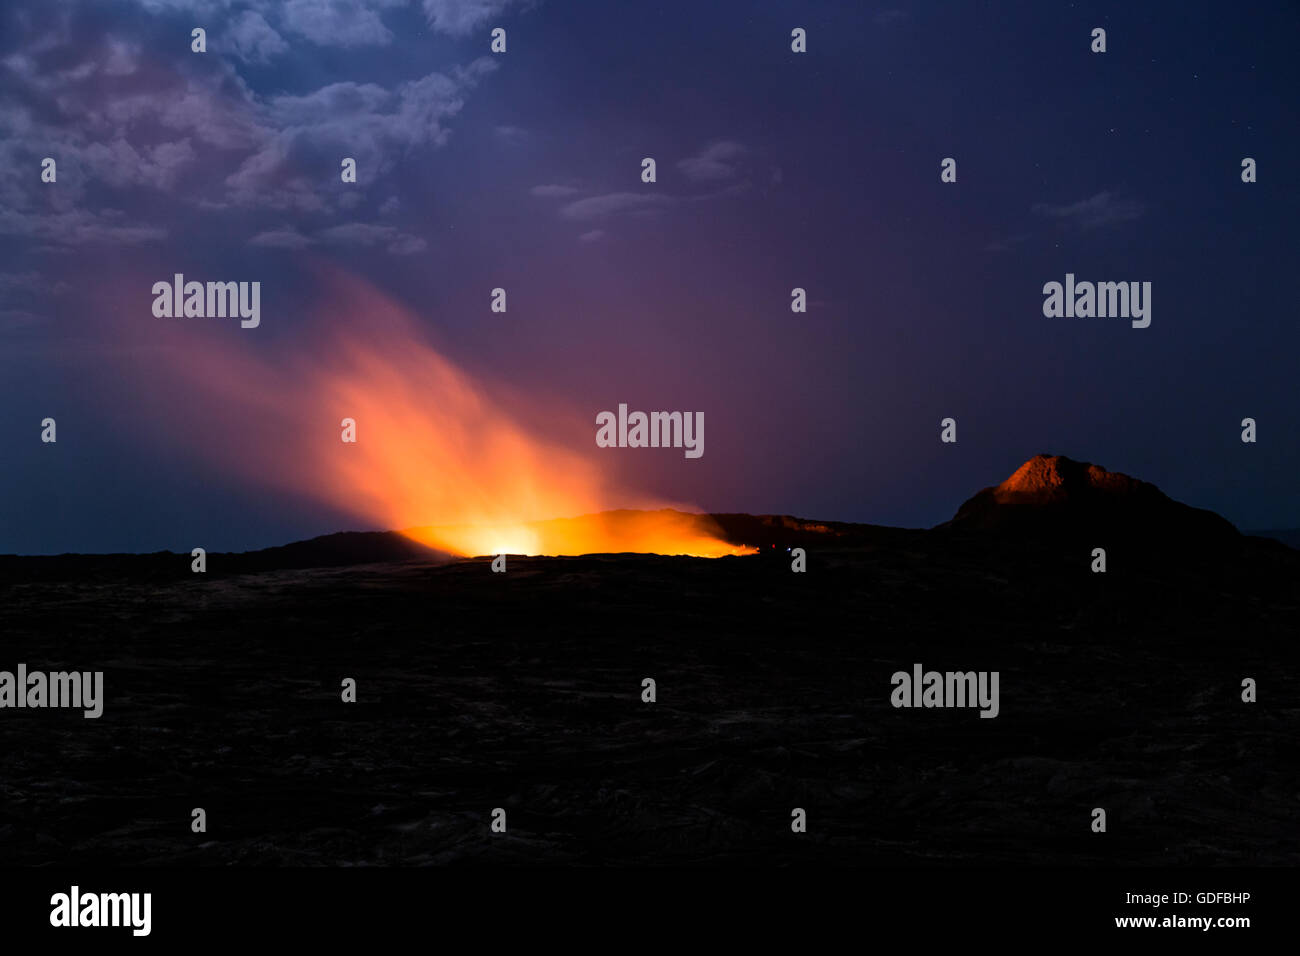 Eruption in der Nacht, Krater des aktiven Vulkans Erta Ale, Danakil-Senke, Afar-Dreieck, Äthiopien Stockfoto